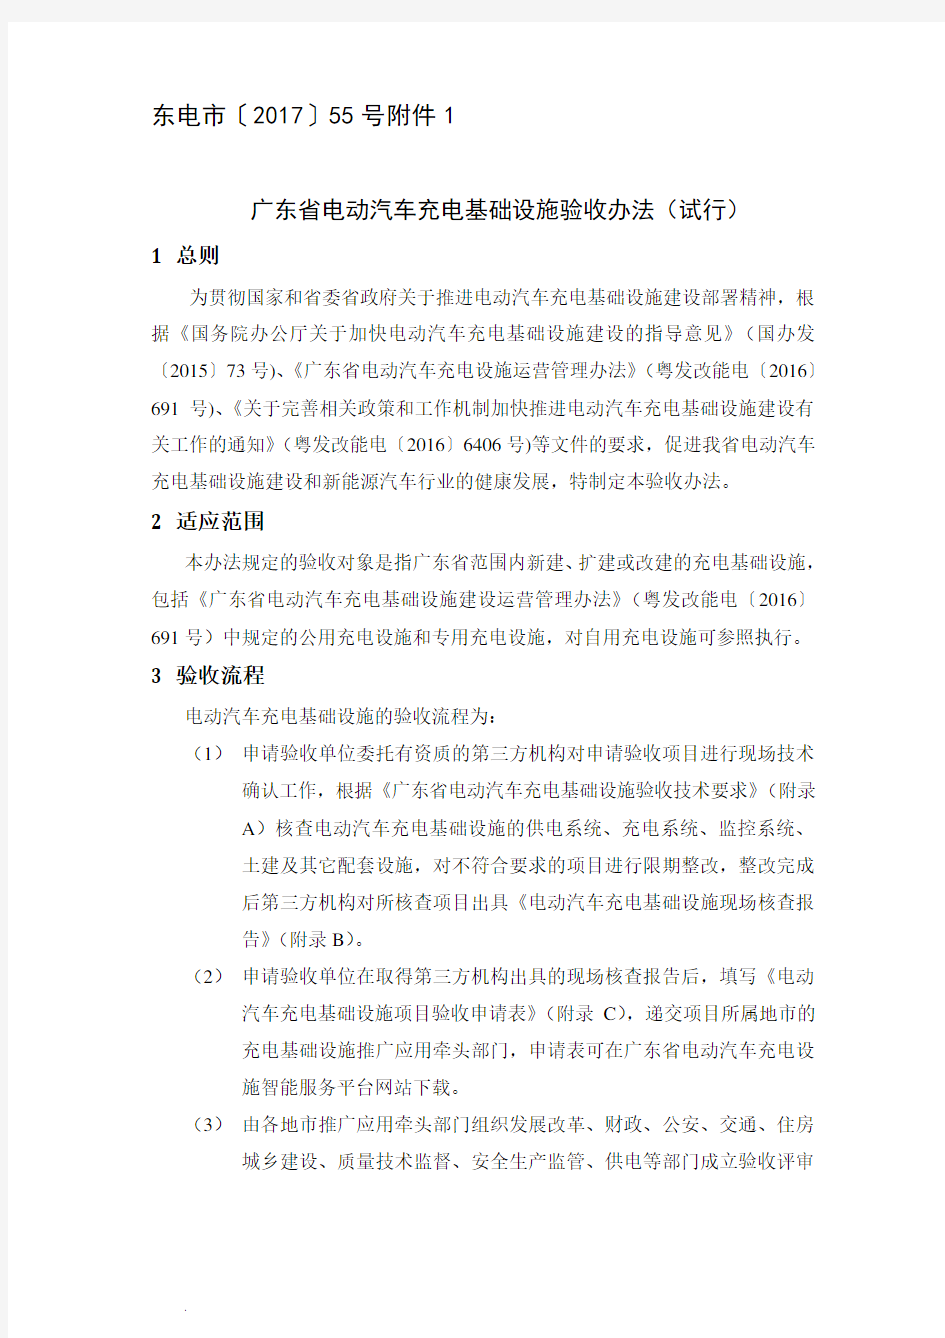 最新最新广东省电动汽车充电基础设施验收办法(试行)(修订版)